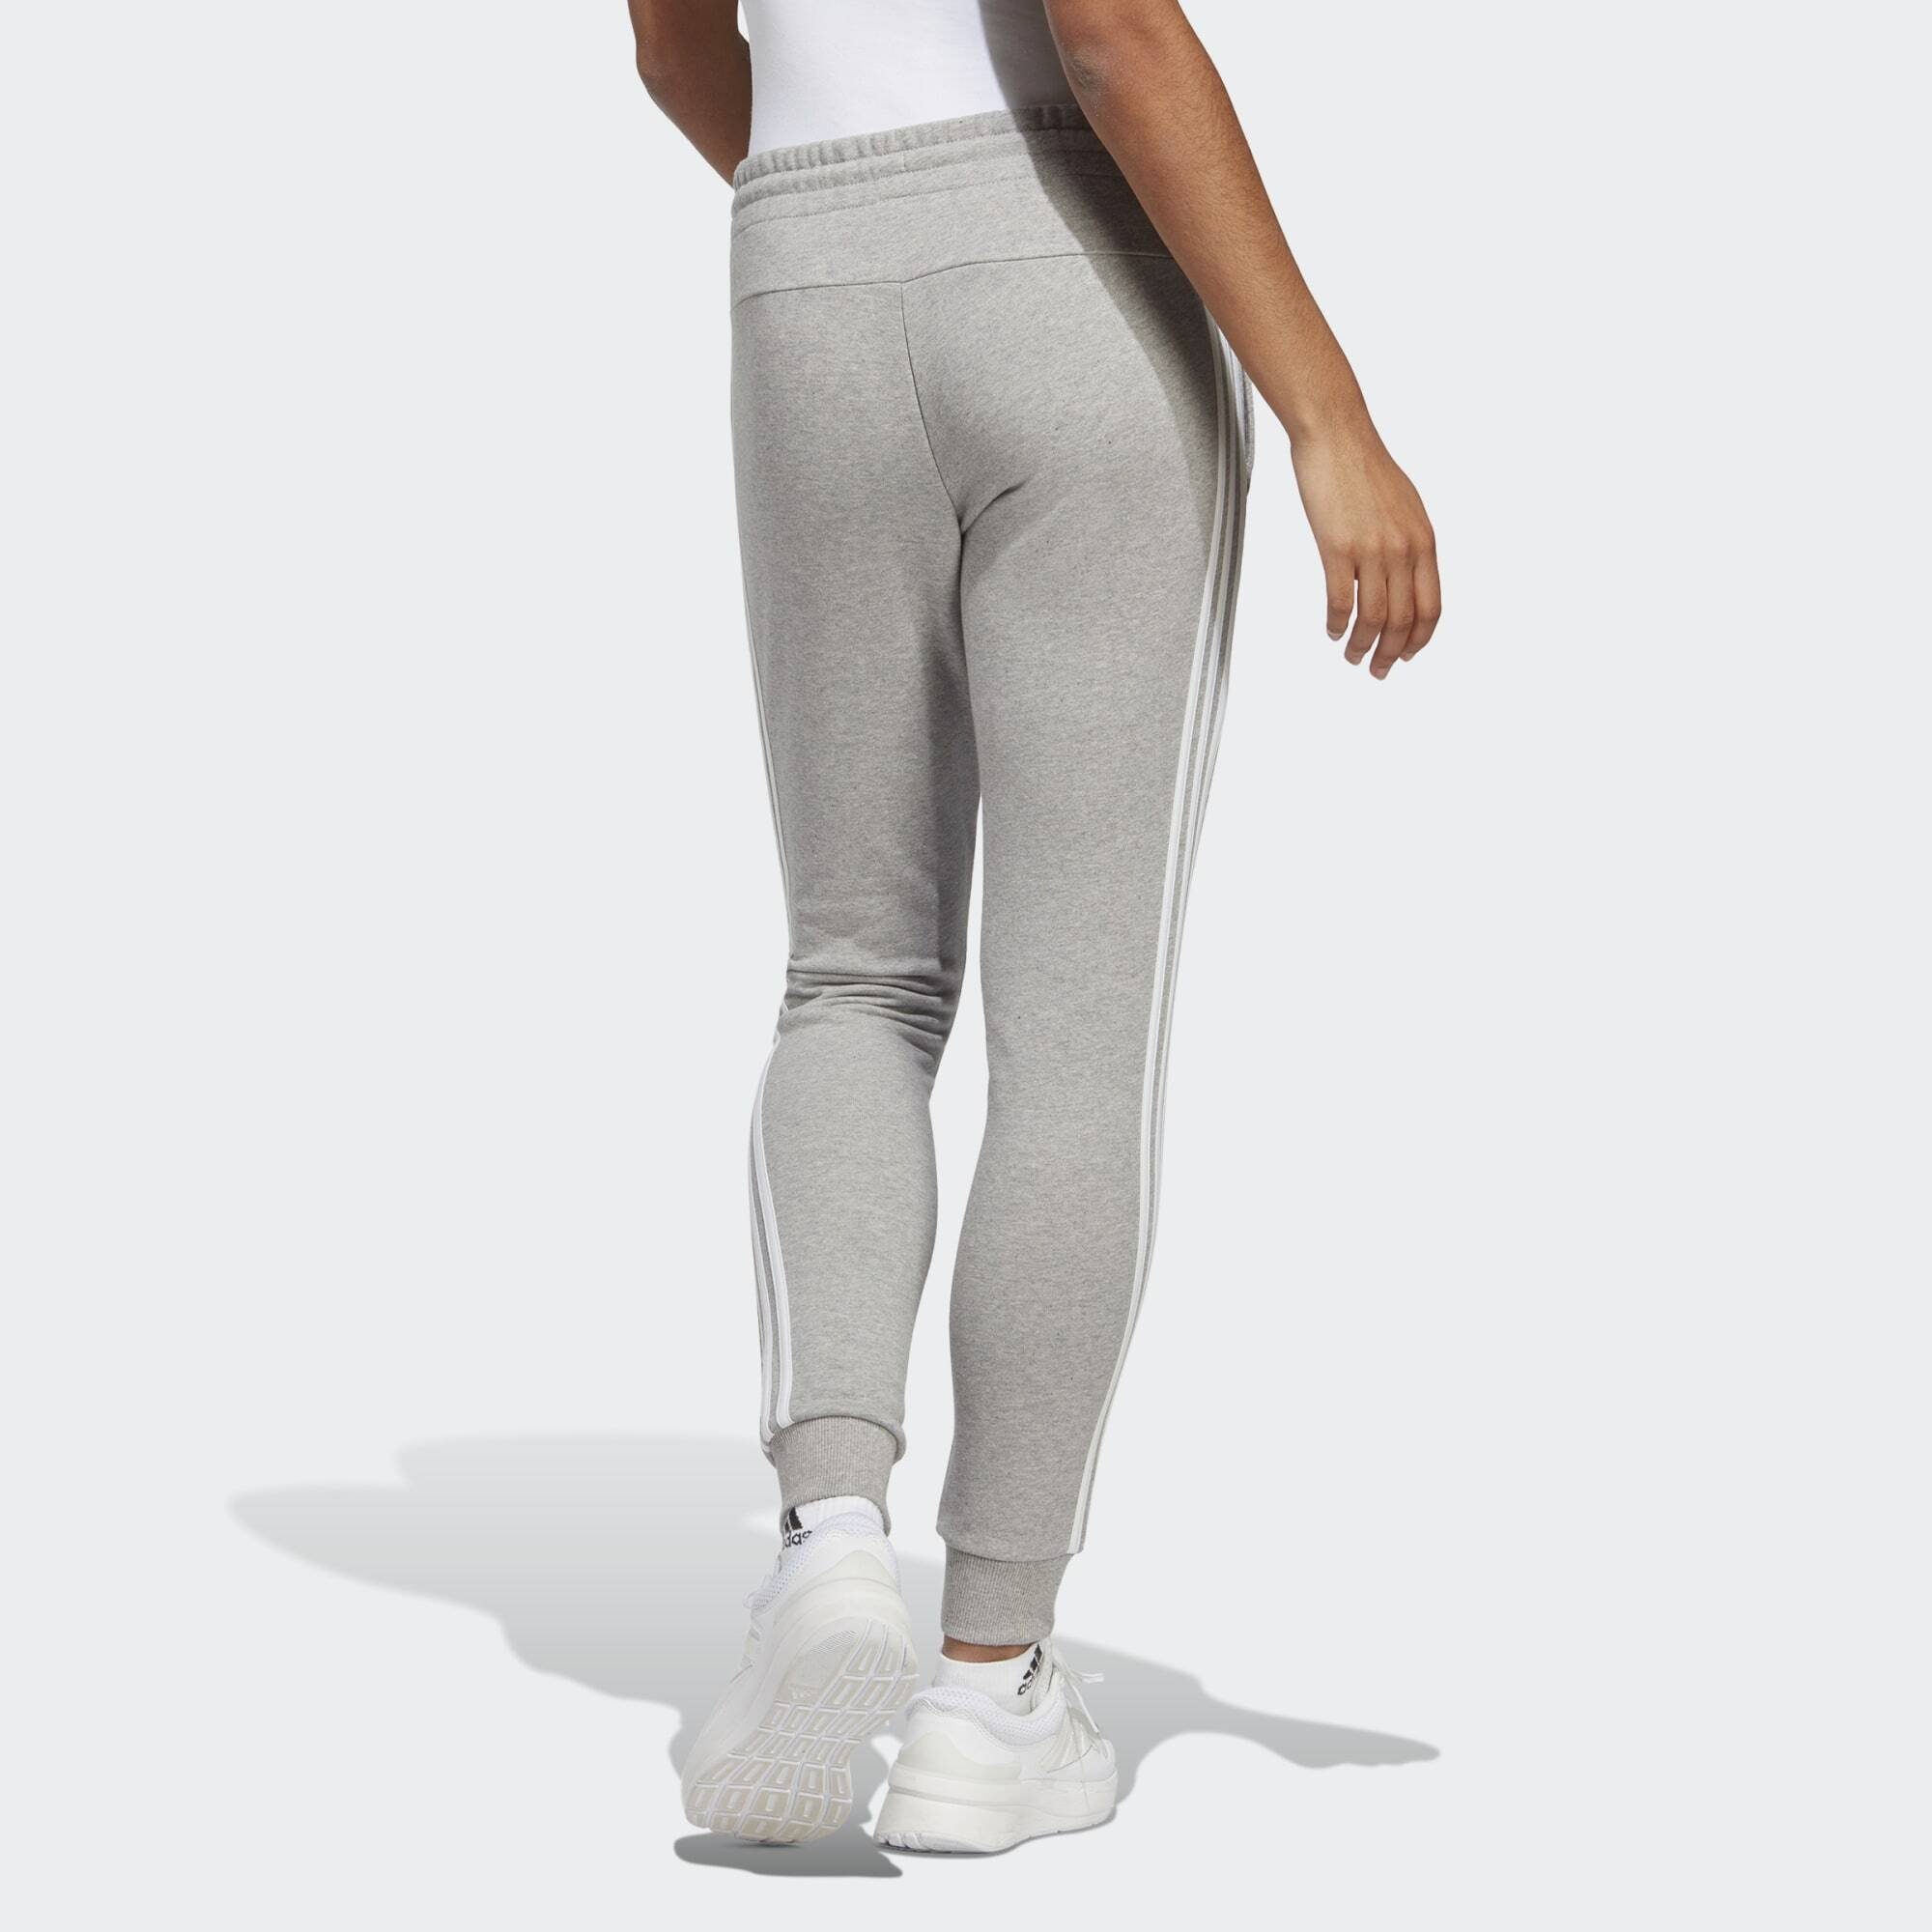 Sportswear ESSENTIALS Grey Heather Jogginghose / HOSE Medium CUFFED White 3-STREIFEN TERRY adidas FRENCH